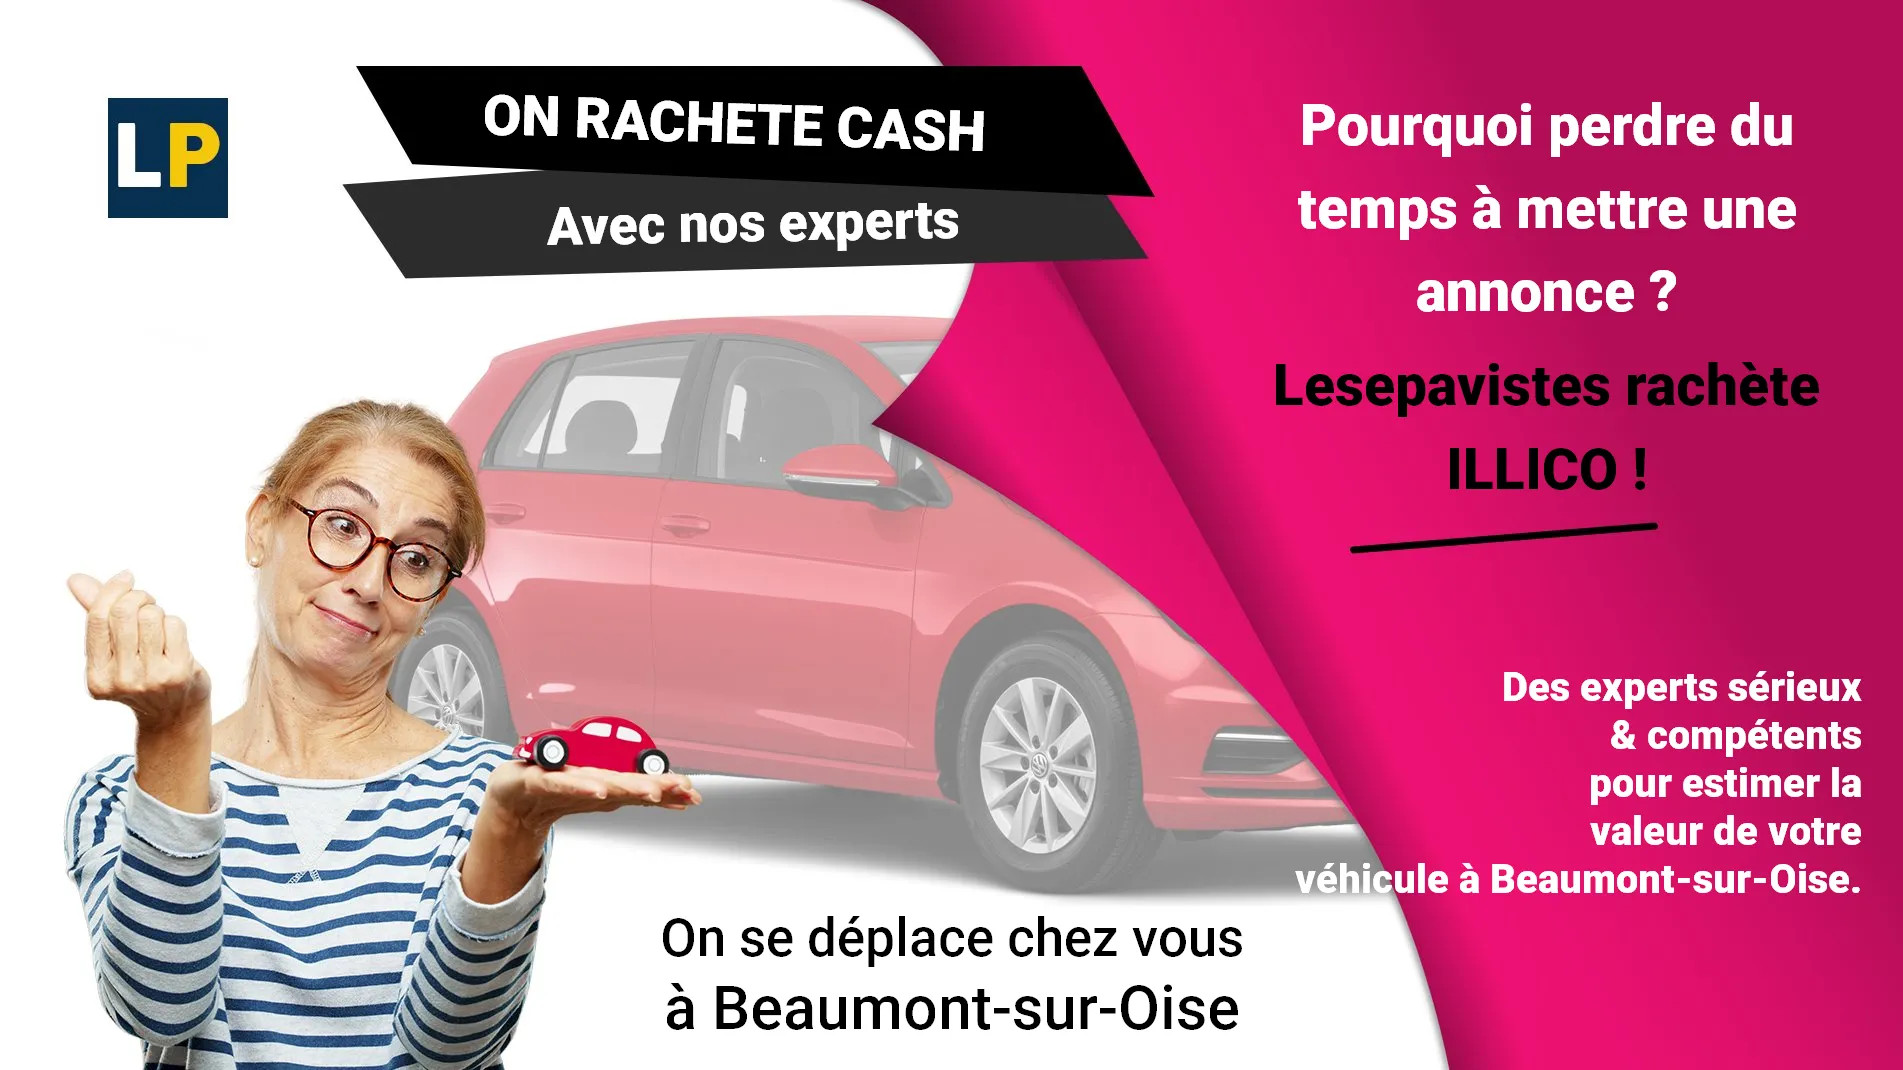 Reprise, rachat de voiture d'occasion à Beaumont-sur-Oise